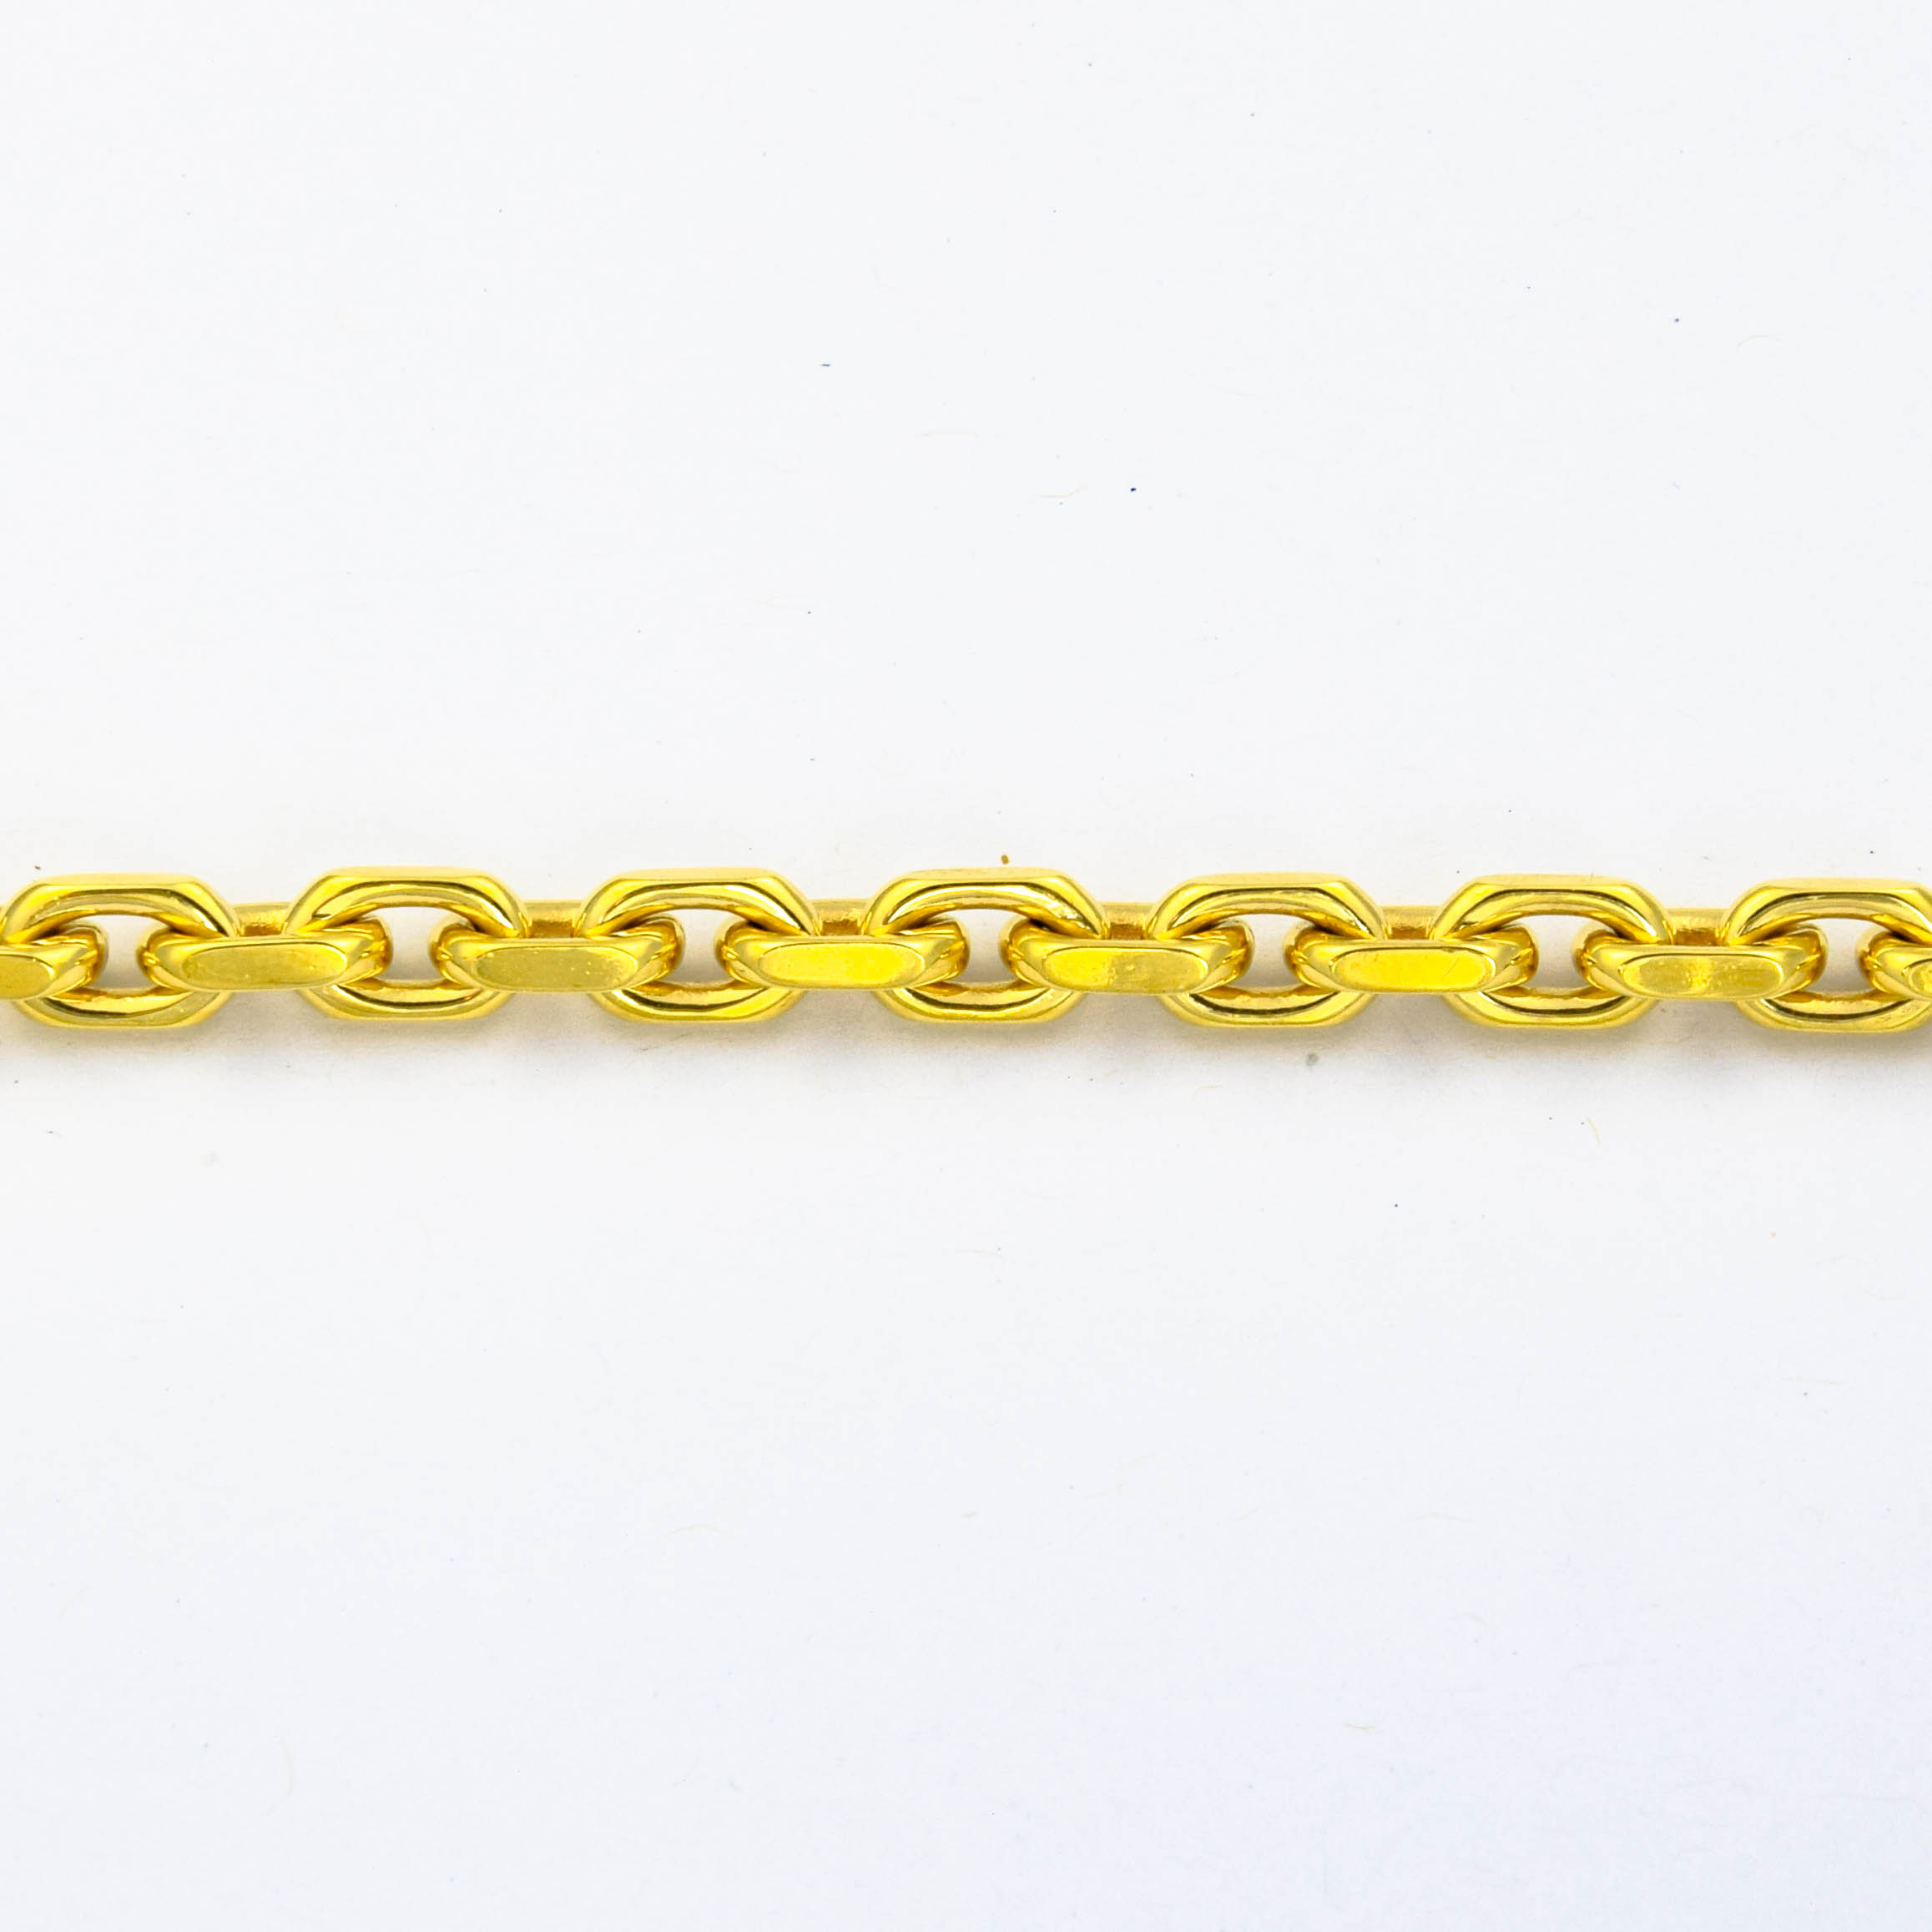 F. Binder Armband aus 750 Gelbgold, nachhaltiger second hand Schmuck perfekt aufgearbeitet